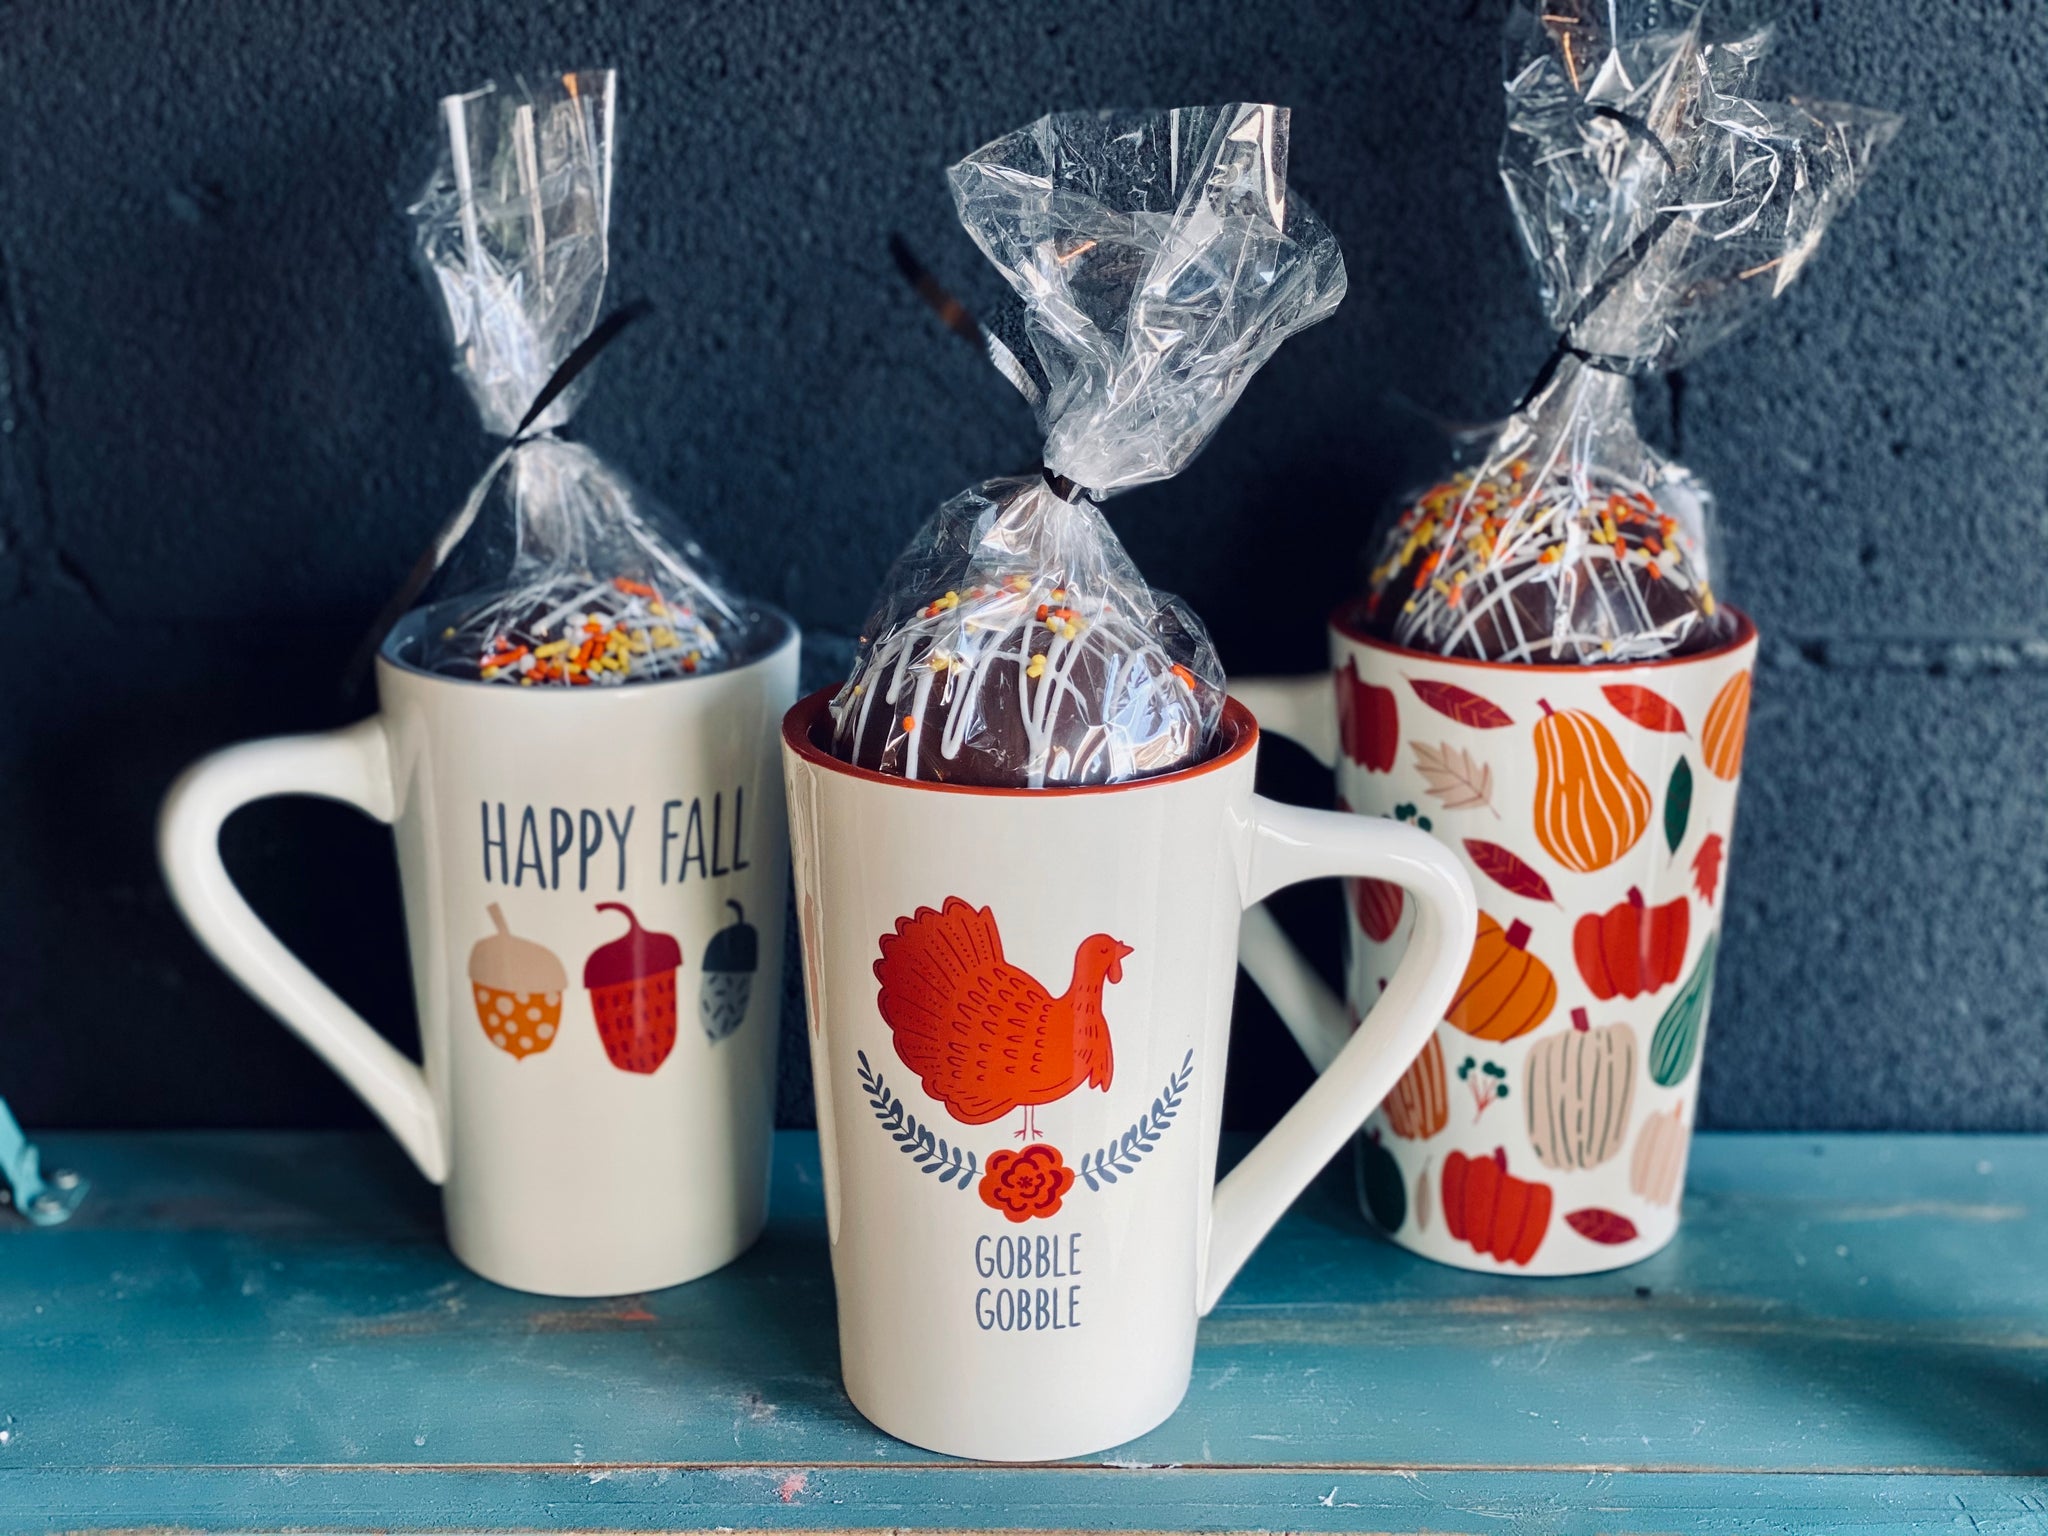 Hot Chocolate Bomb & Pottery Mug Gift Set – Meringue Bakery & Cafe